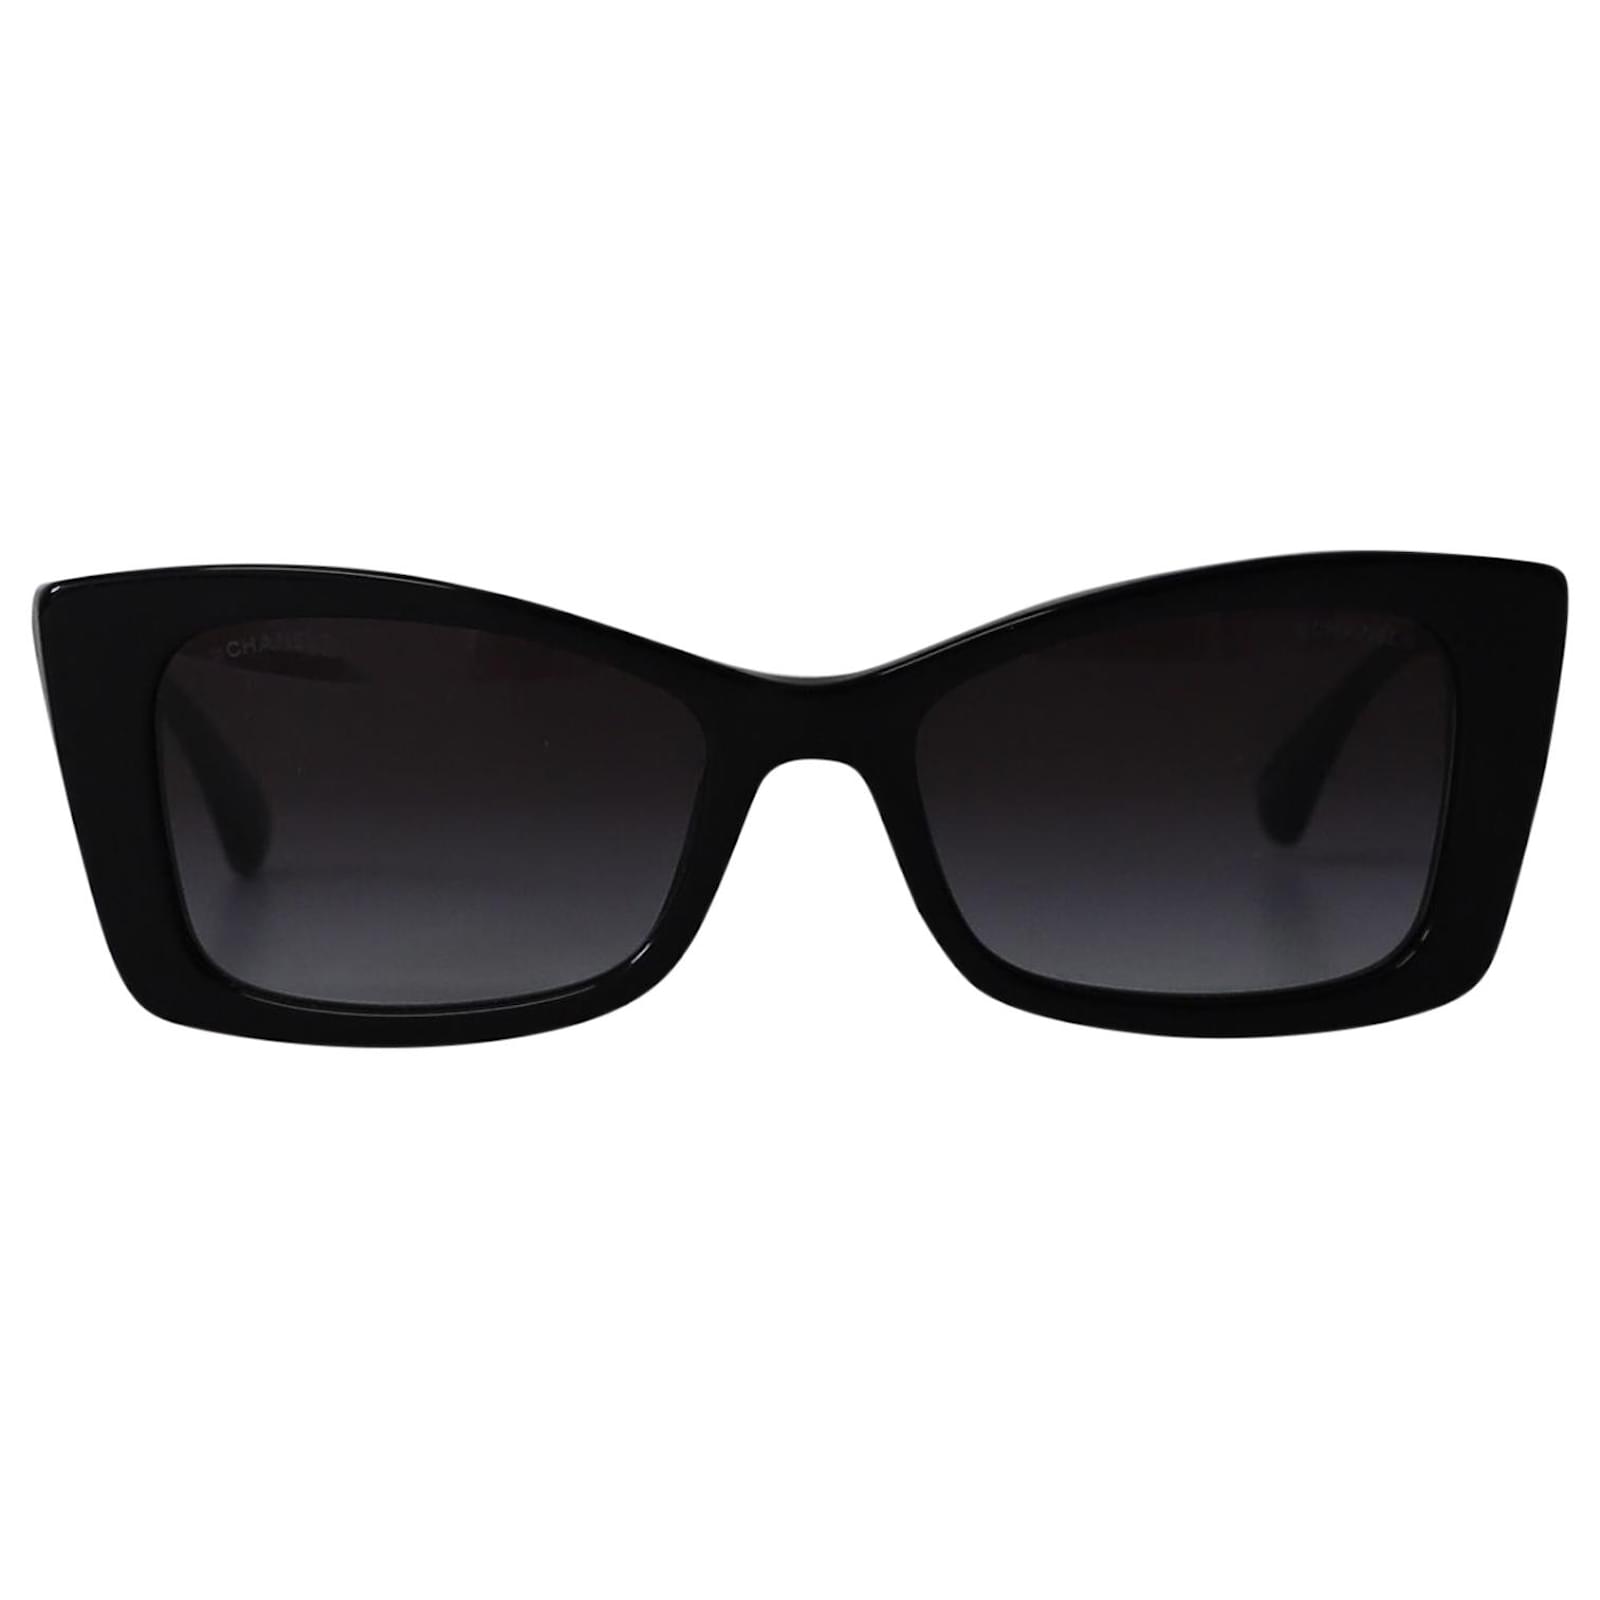 Chanel 5430 Gradient Rectangular Sunglasses in Black Acetate